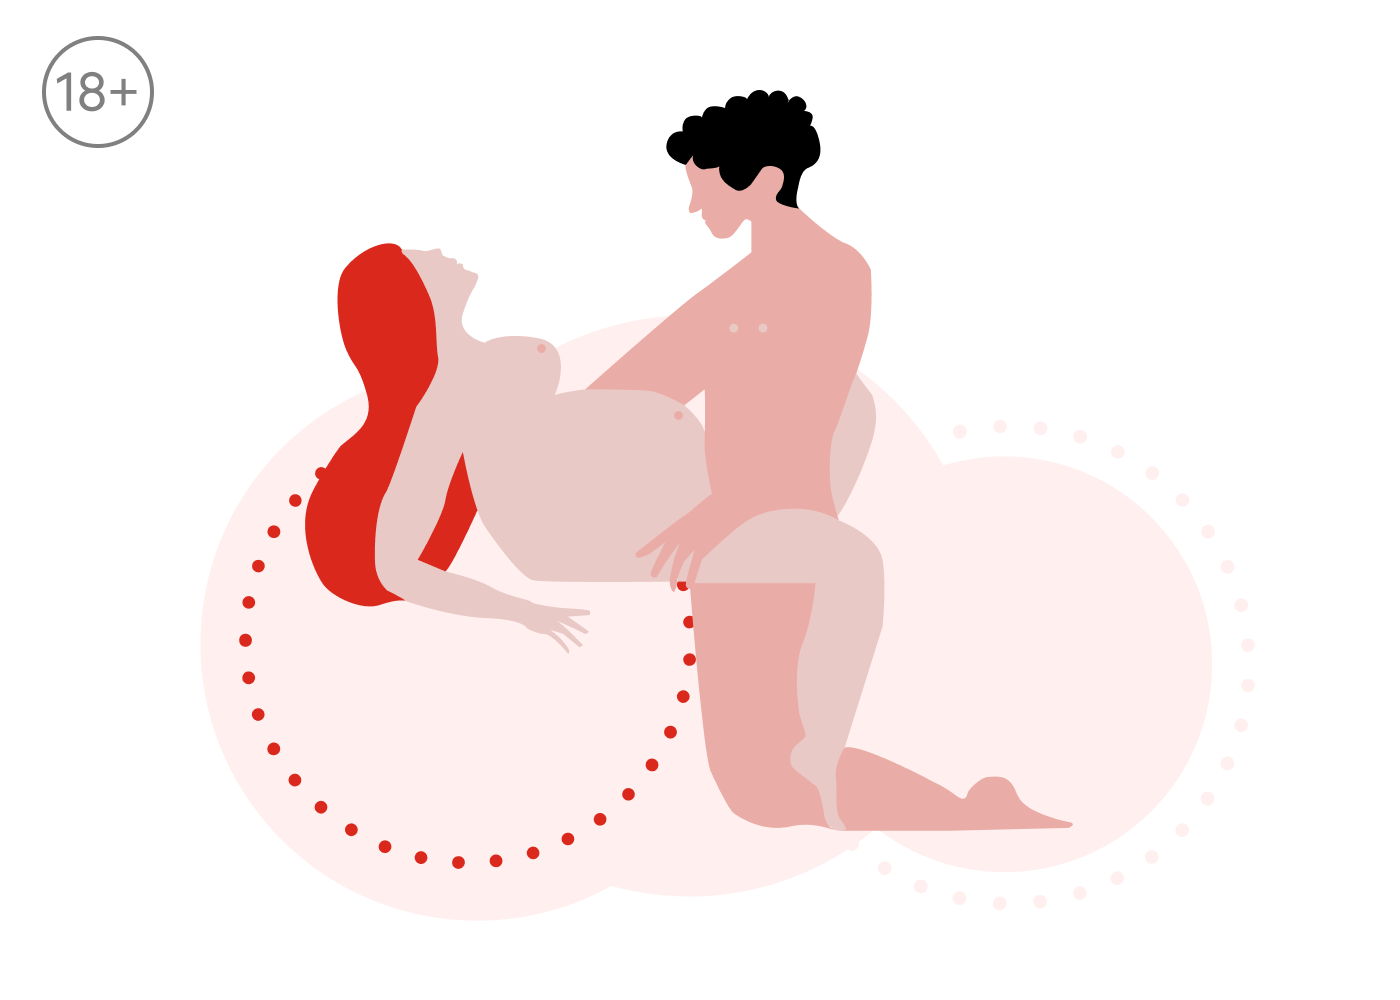 Секс во время беременности: удовольствие без вреда